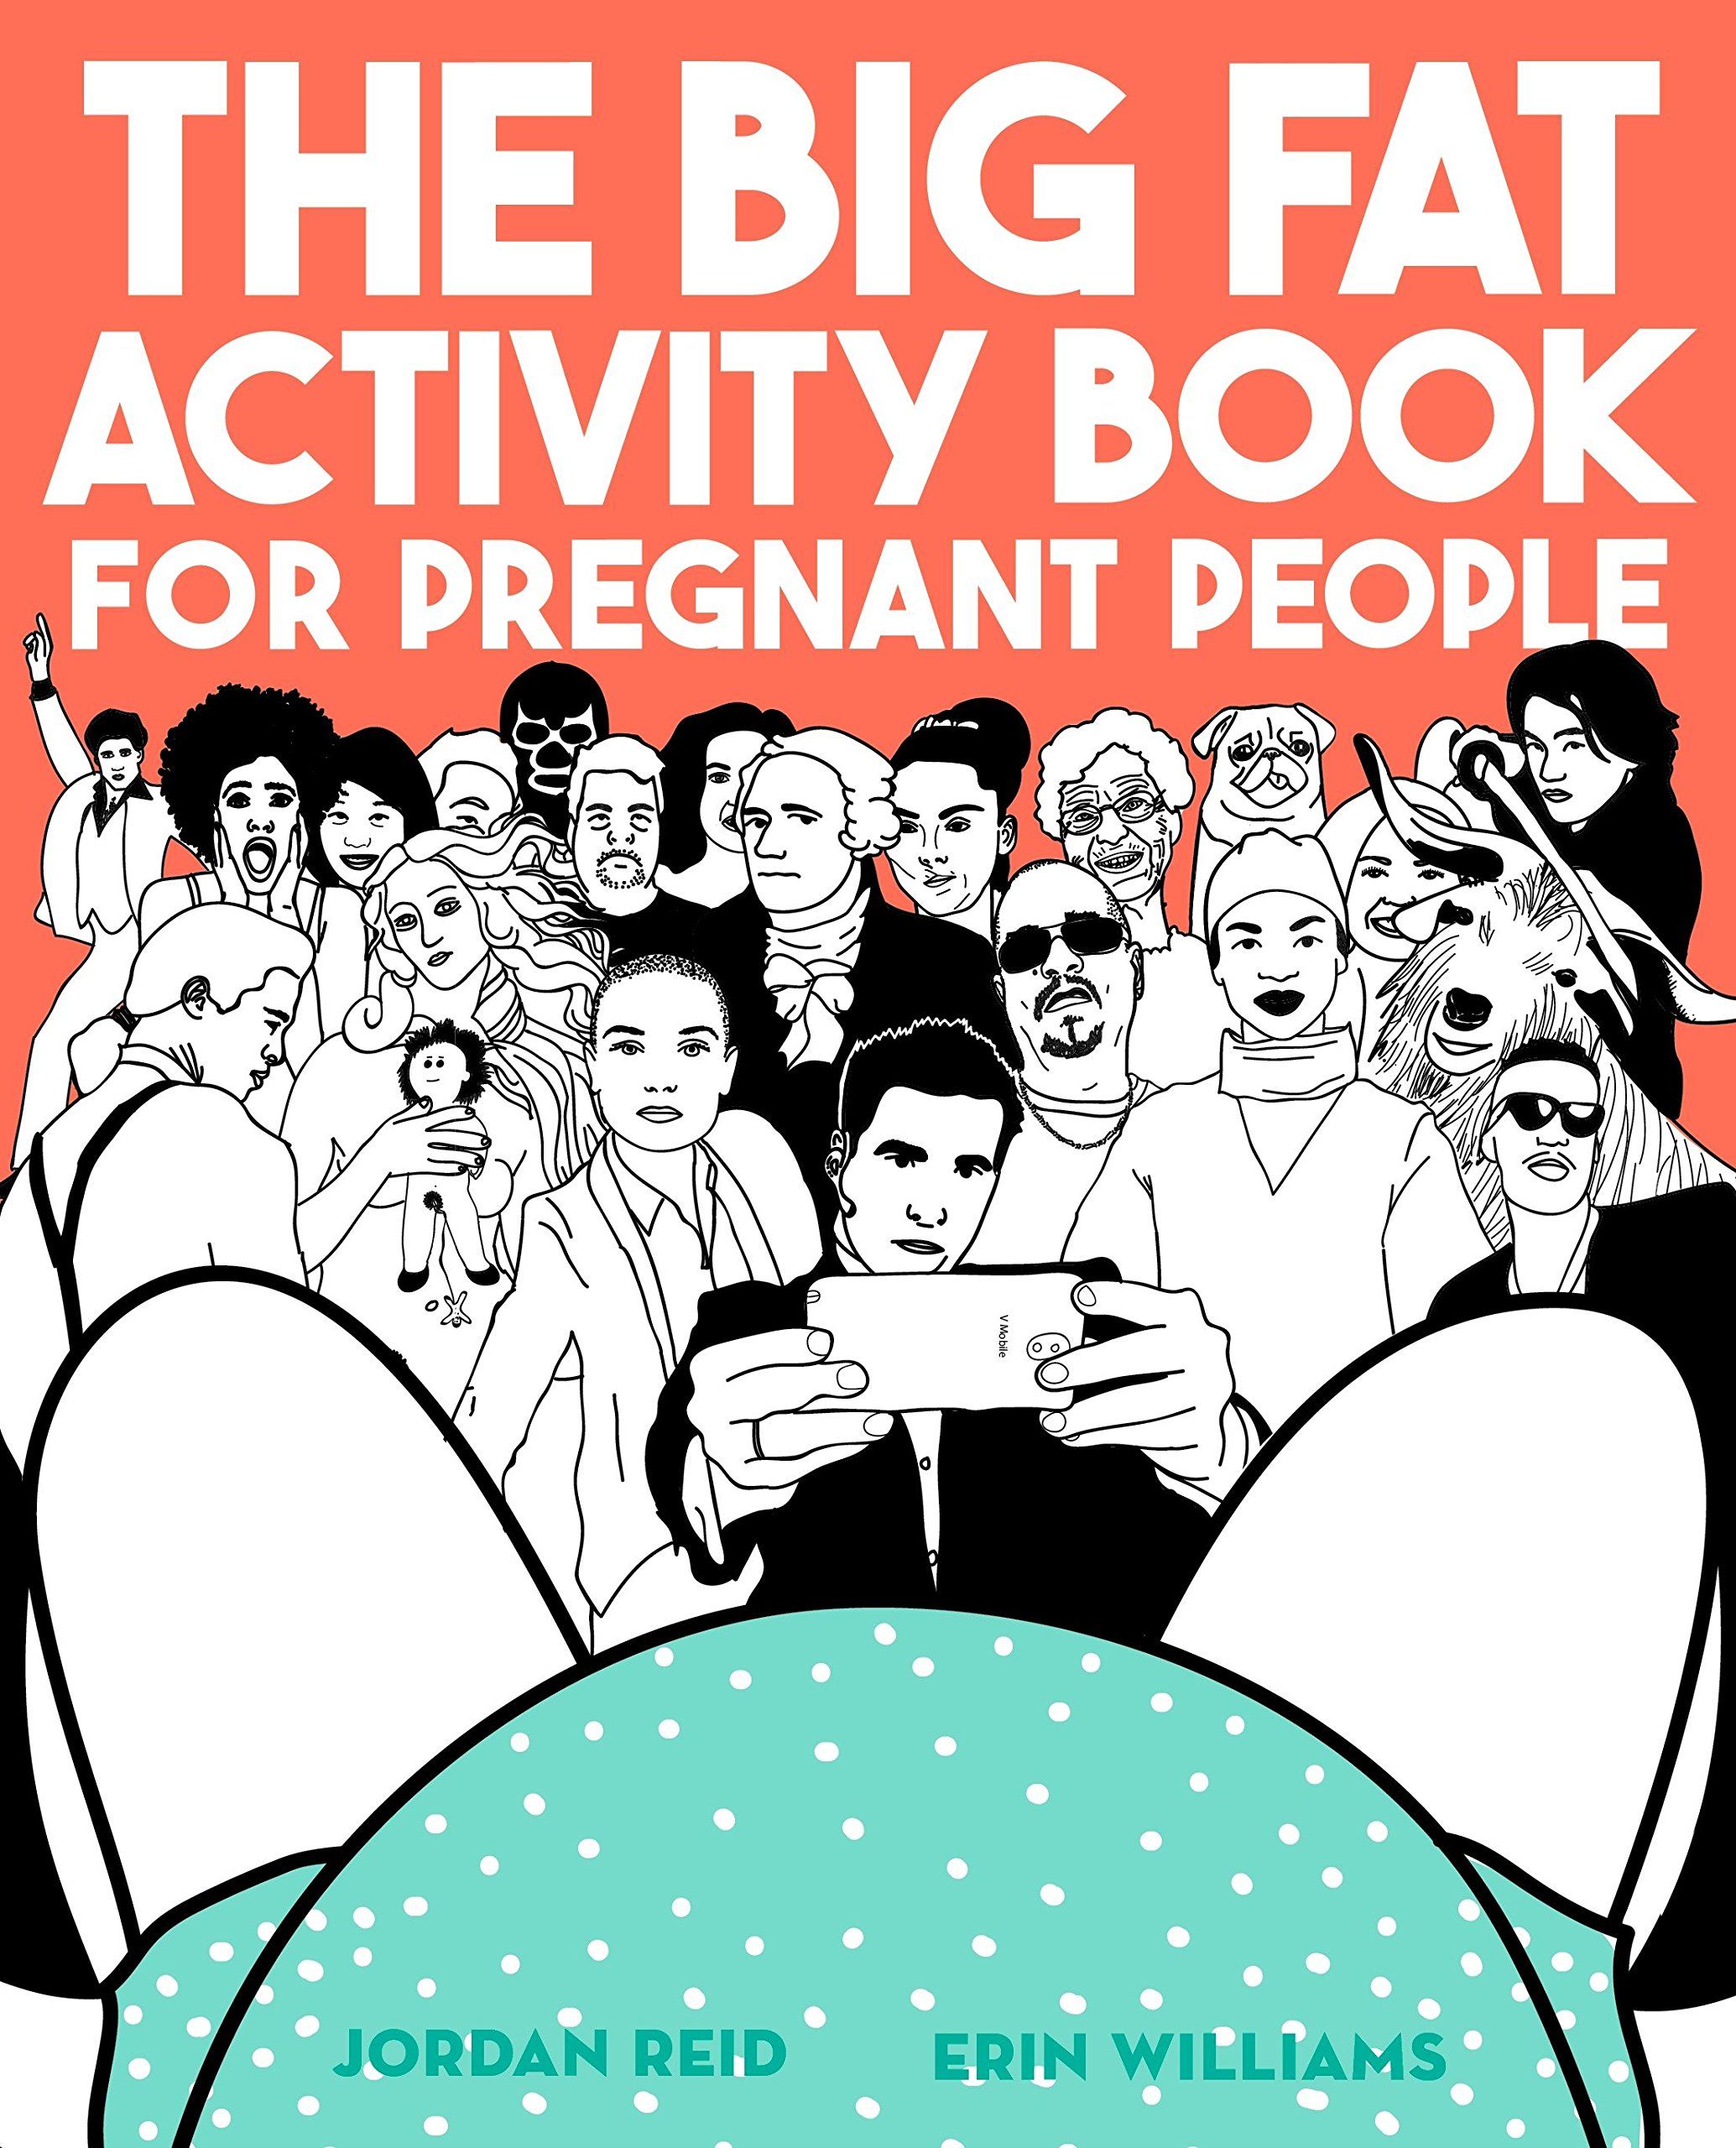 https://pyxis.nymag.com/v1/imgs/bf8/ae8/c8aff38740d14f012f43a1fb1111f72e42-pregnantactivitybook.jpg